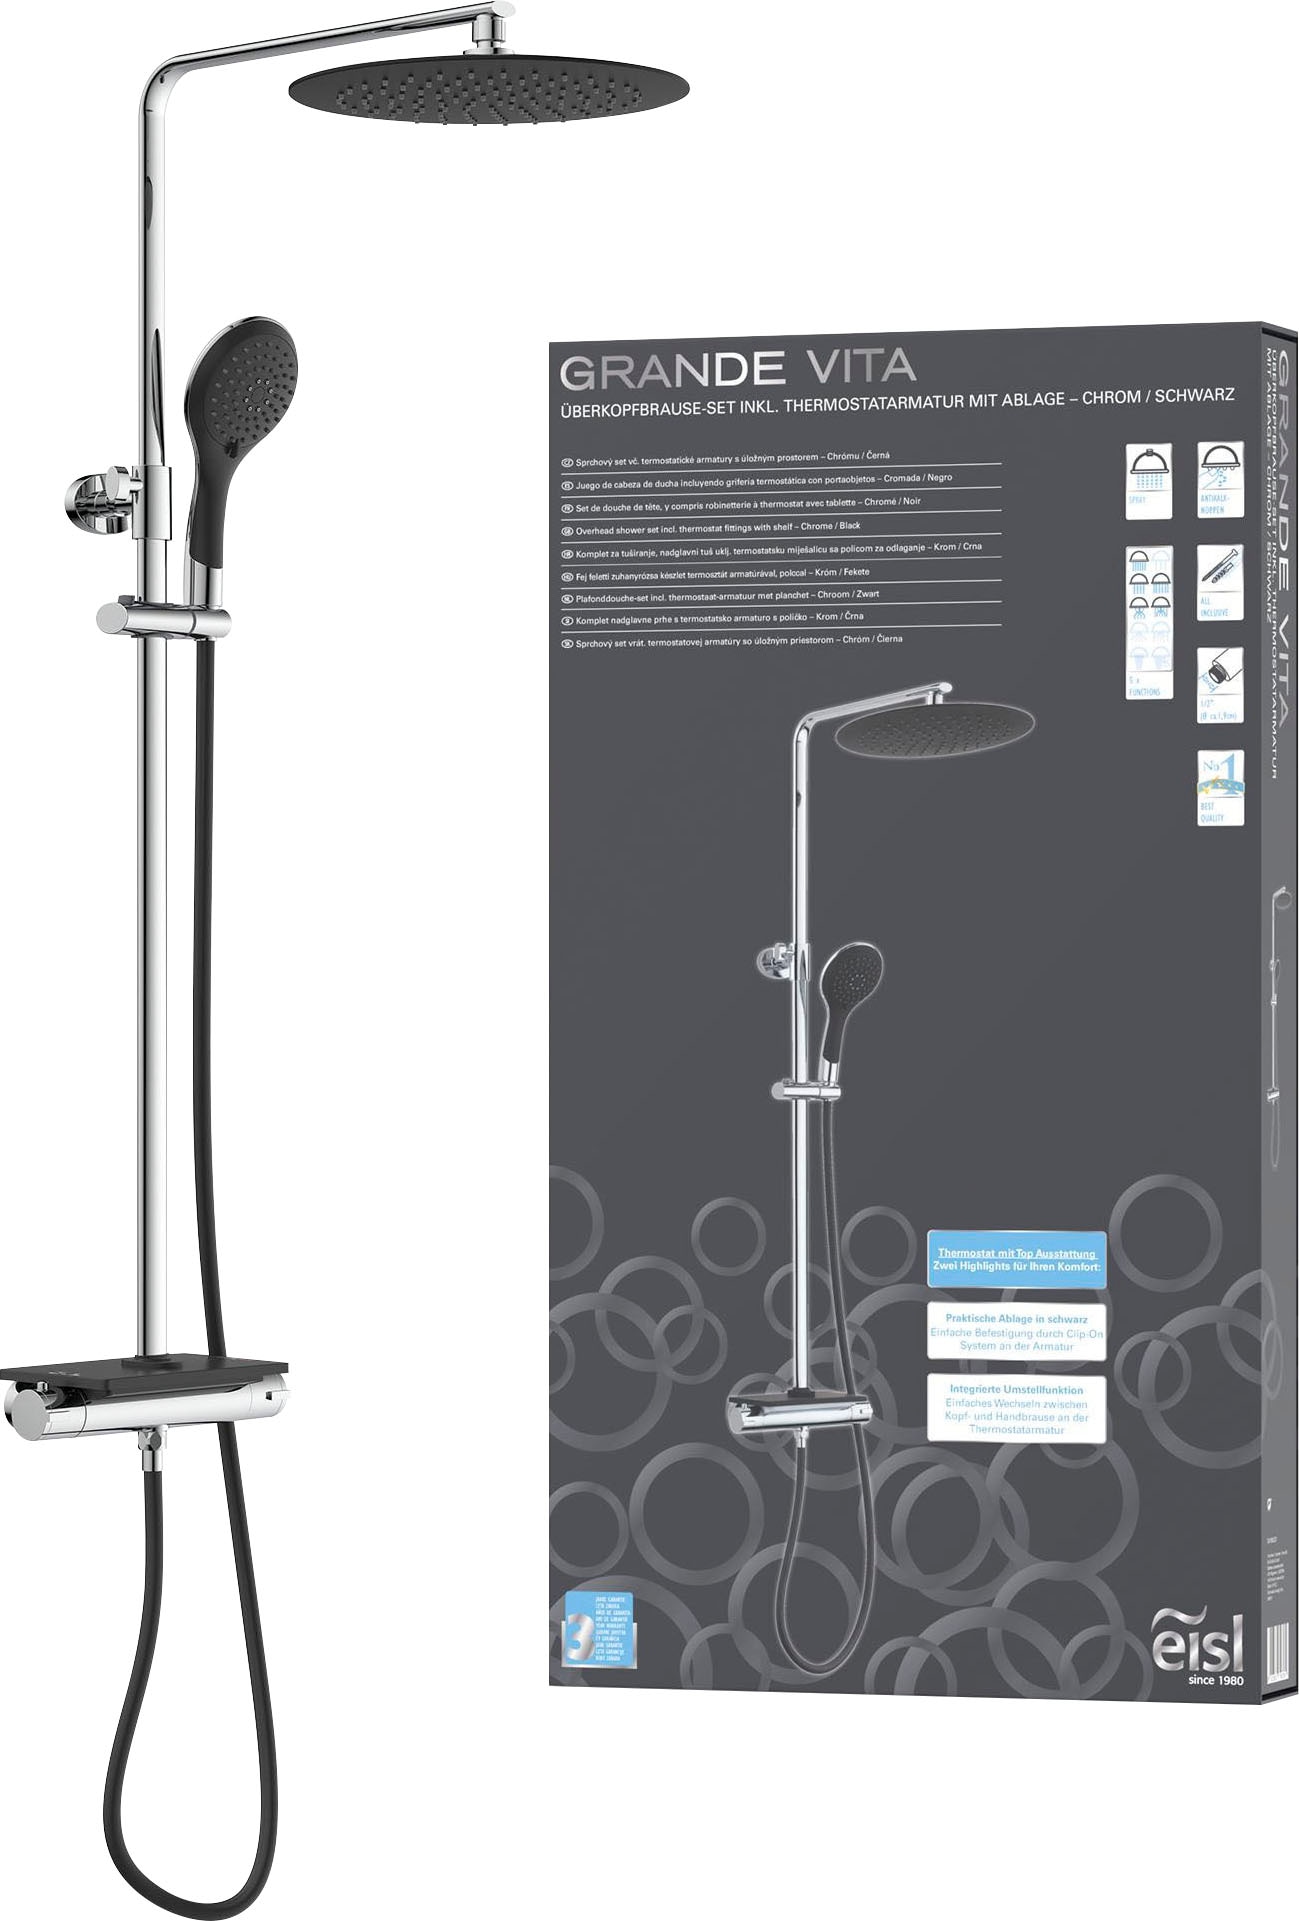 Brausegarnitur »Grande Vita«, Duschsystem mit Thermostat und Ablage, Regendusche mit...